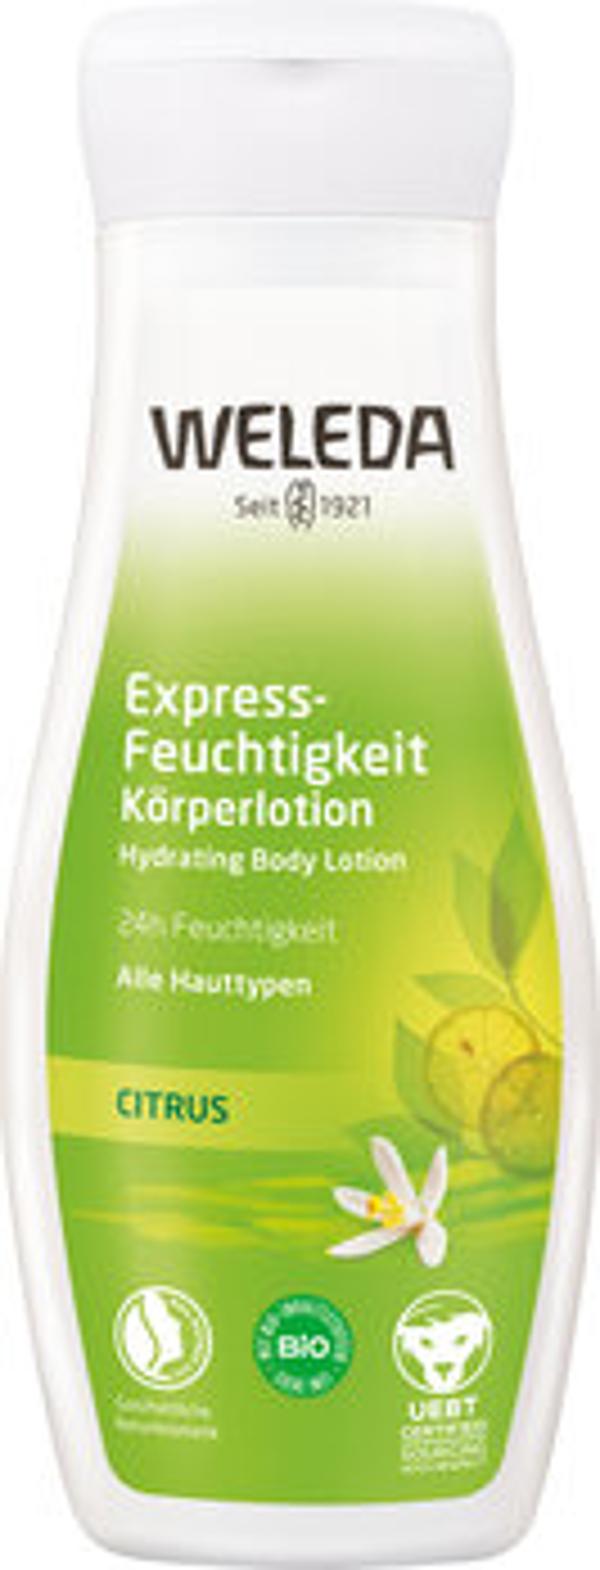 Produktfoto zu Citrus Express-Feuchtigkeit Körperlotion